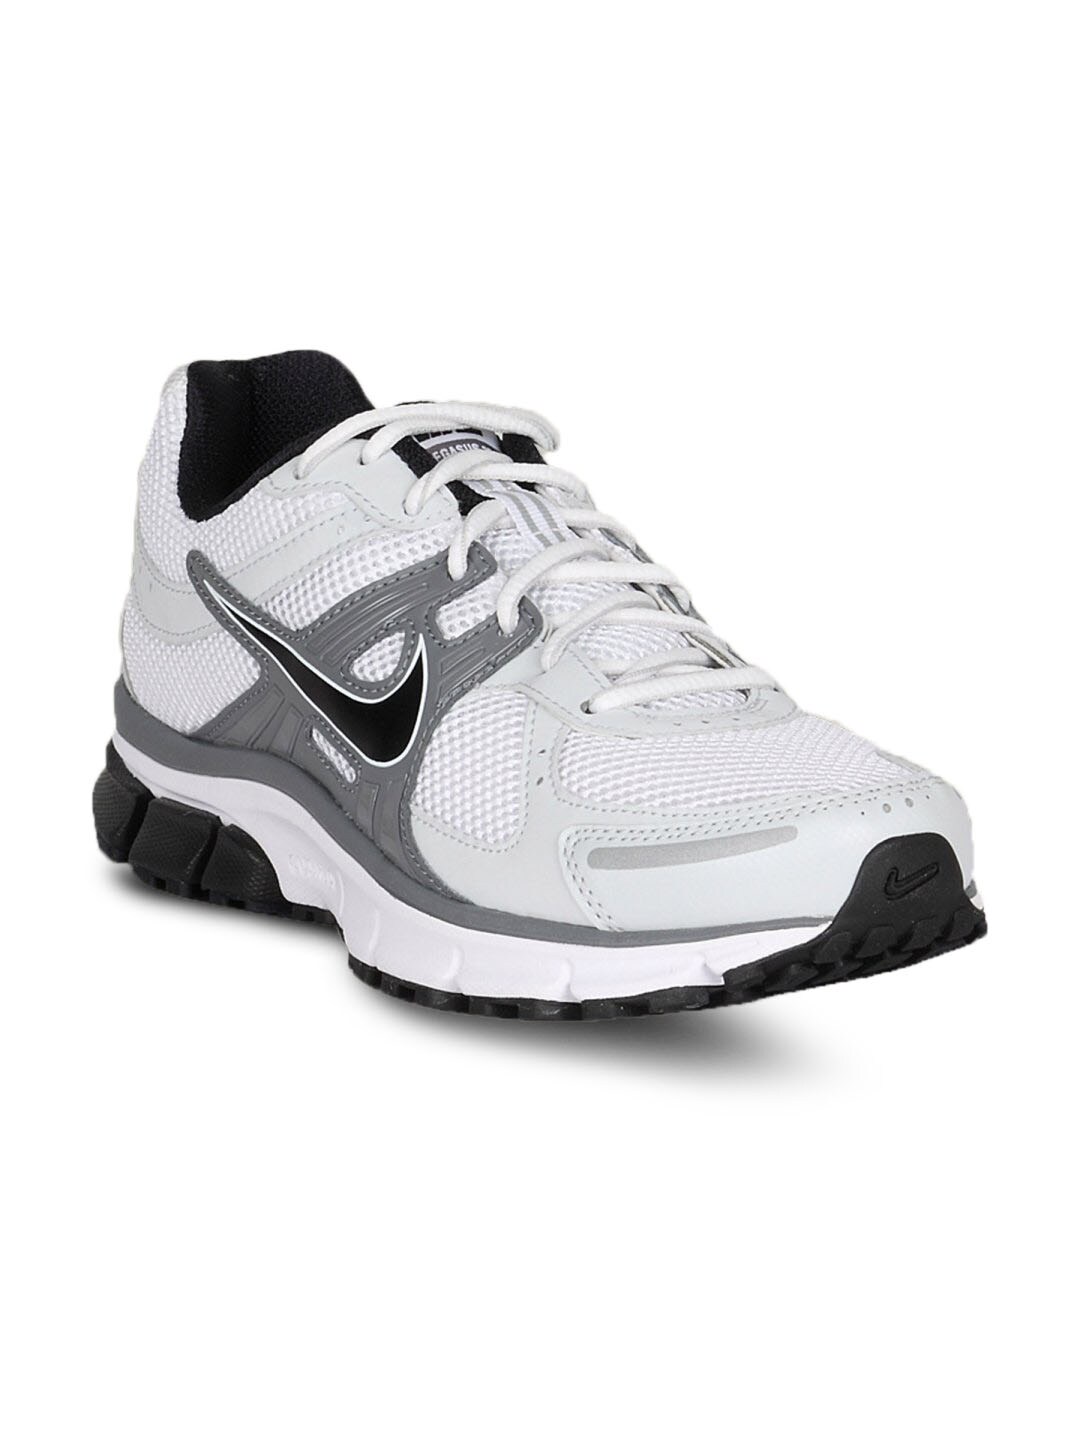 Nike Men's Air Pegasus 27 White Grey Shoe